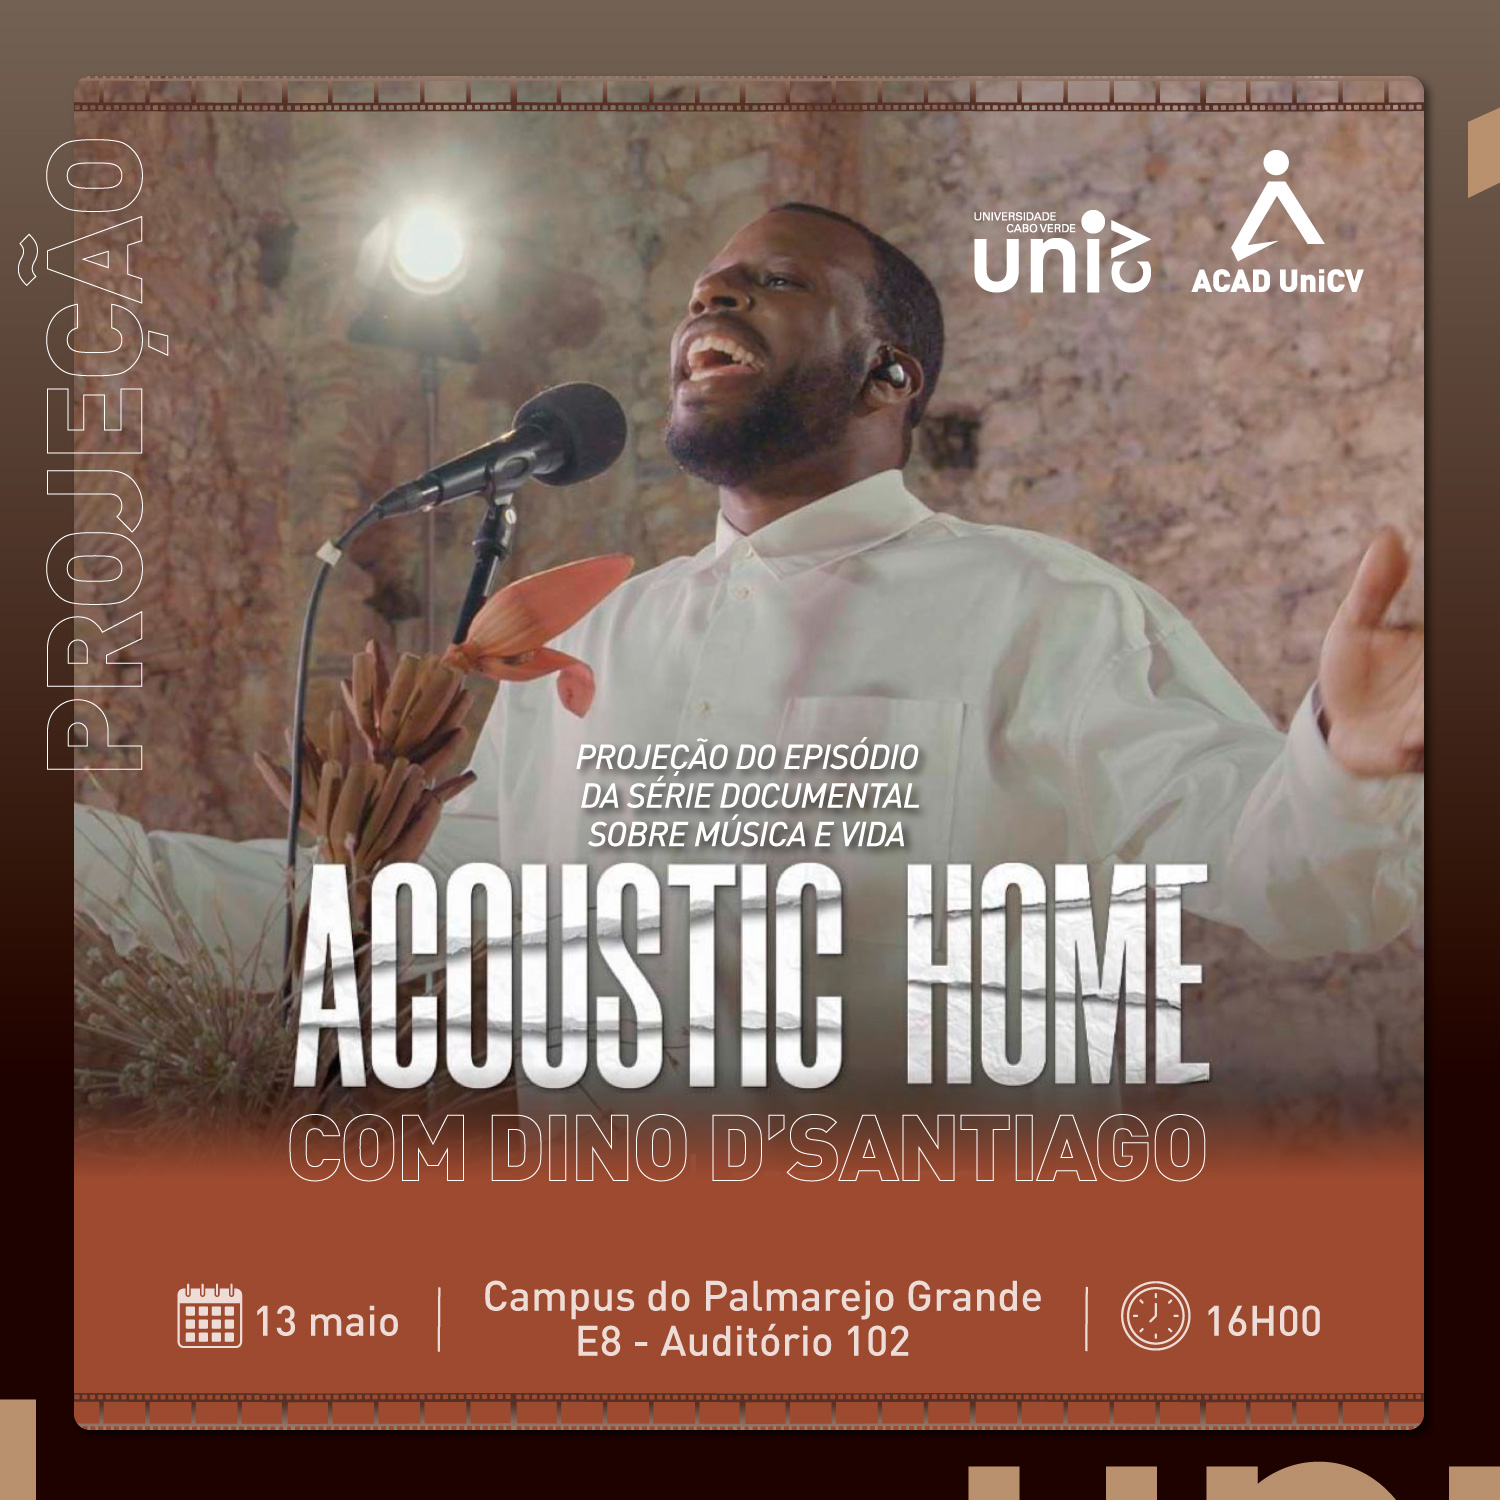 Acoustic_home.jpg